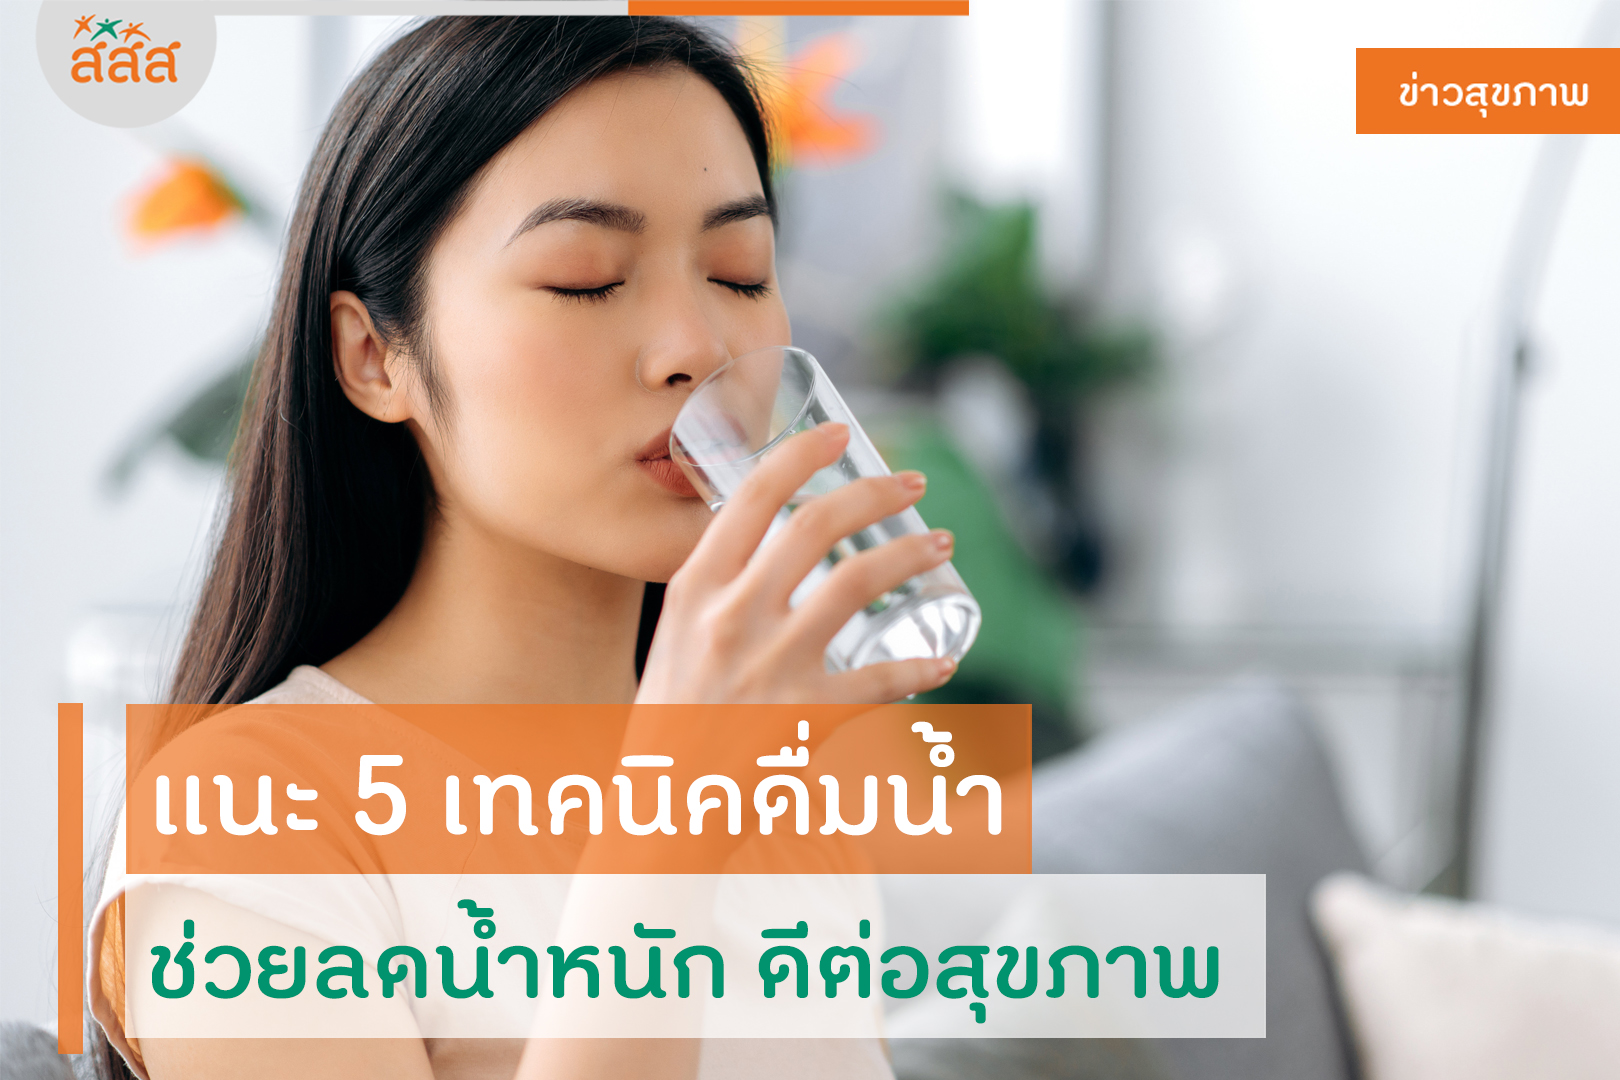 เเนะ 5 เทคนิคดื่มน้ำ ช่วยลดน้ำหนัก ดีต่อสุขภาพ thaihealth